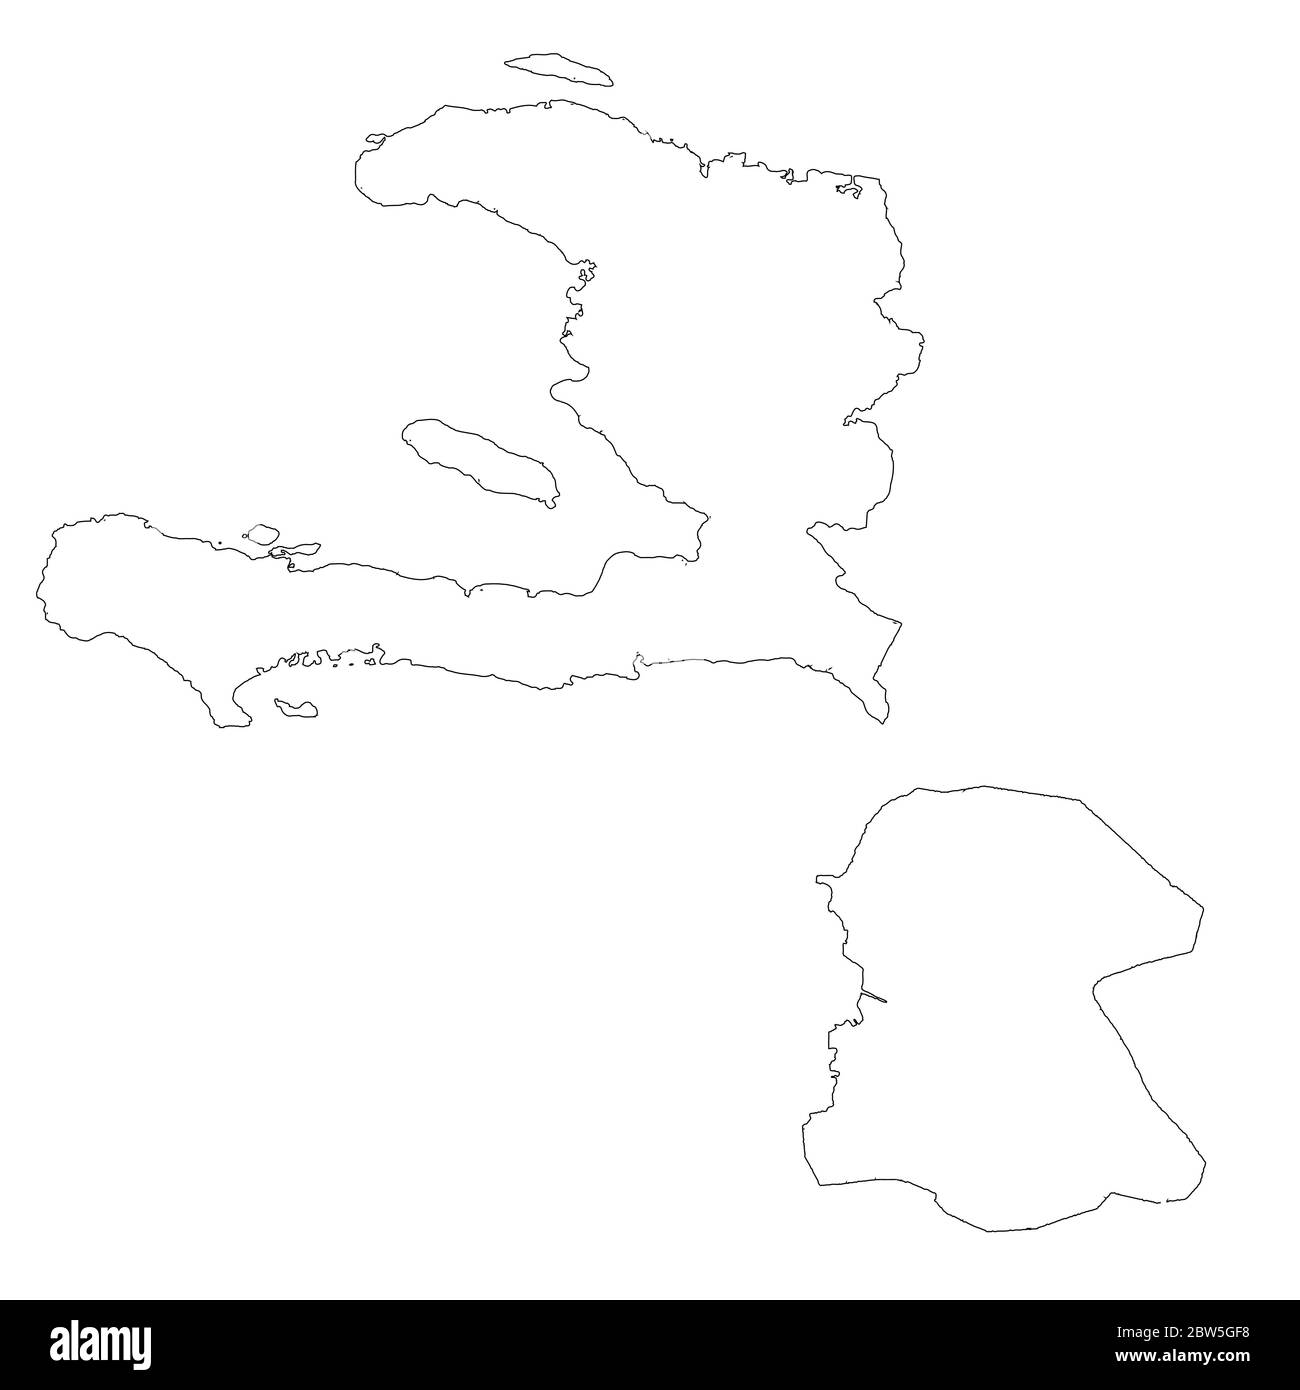 Mappa vettoriale Haiti e Port au Prince. Paese e capitale. Illustrazione vettoriale isolata. Contorno. Illustrazione EPS 10. Illustrazione Vettoriale